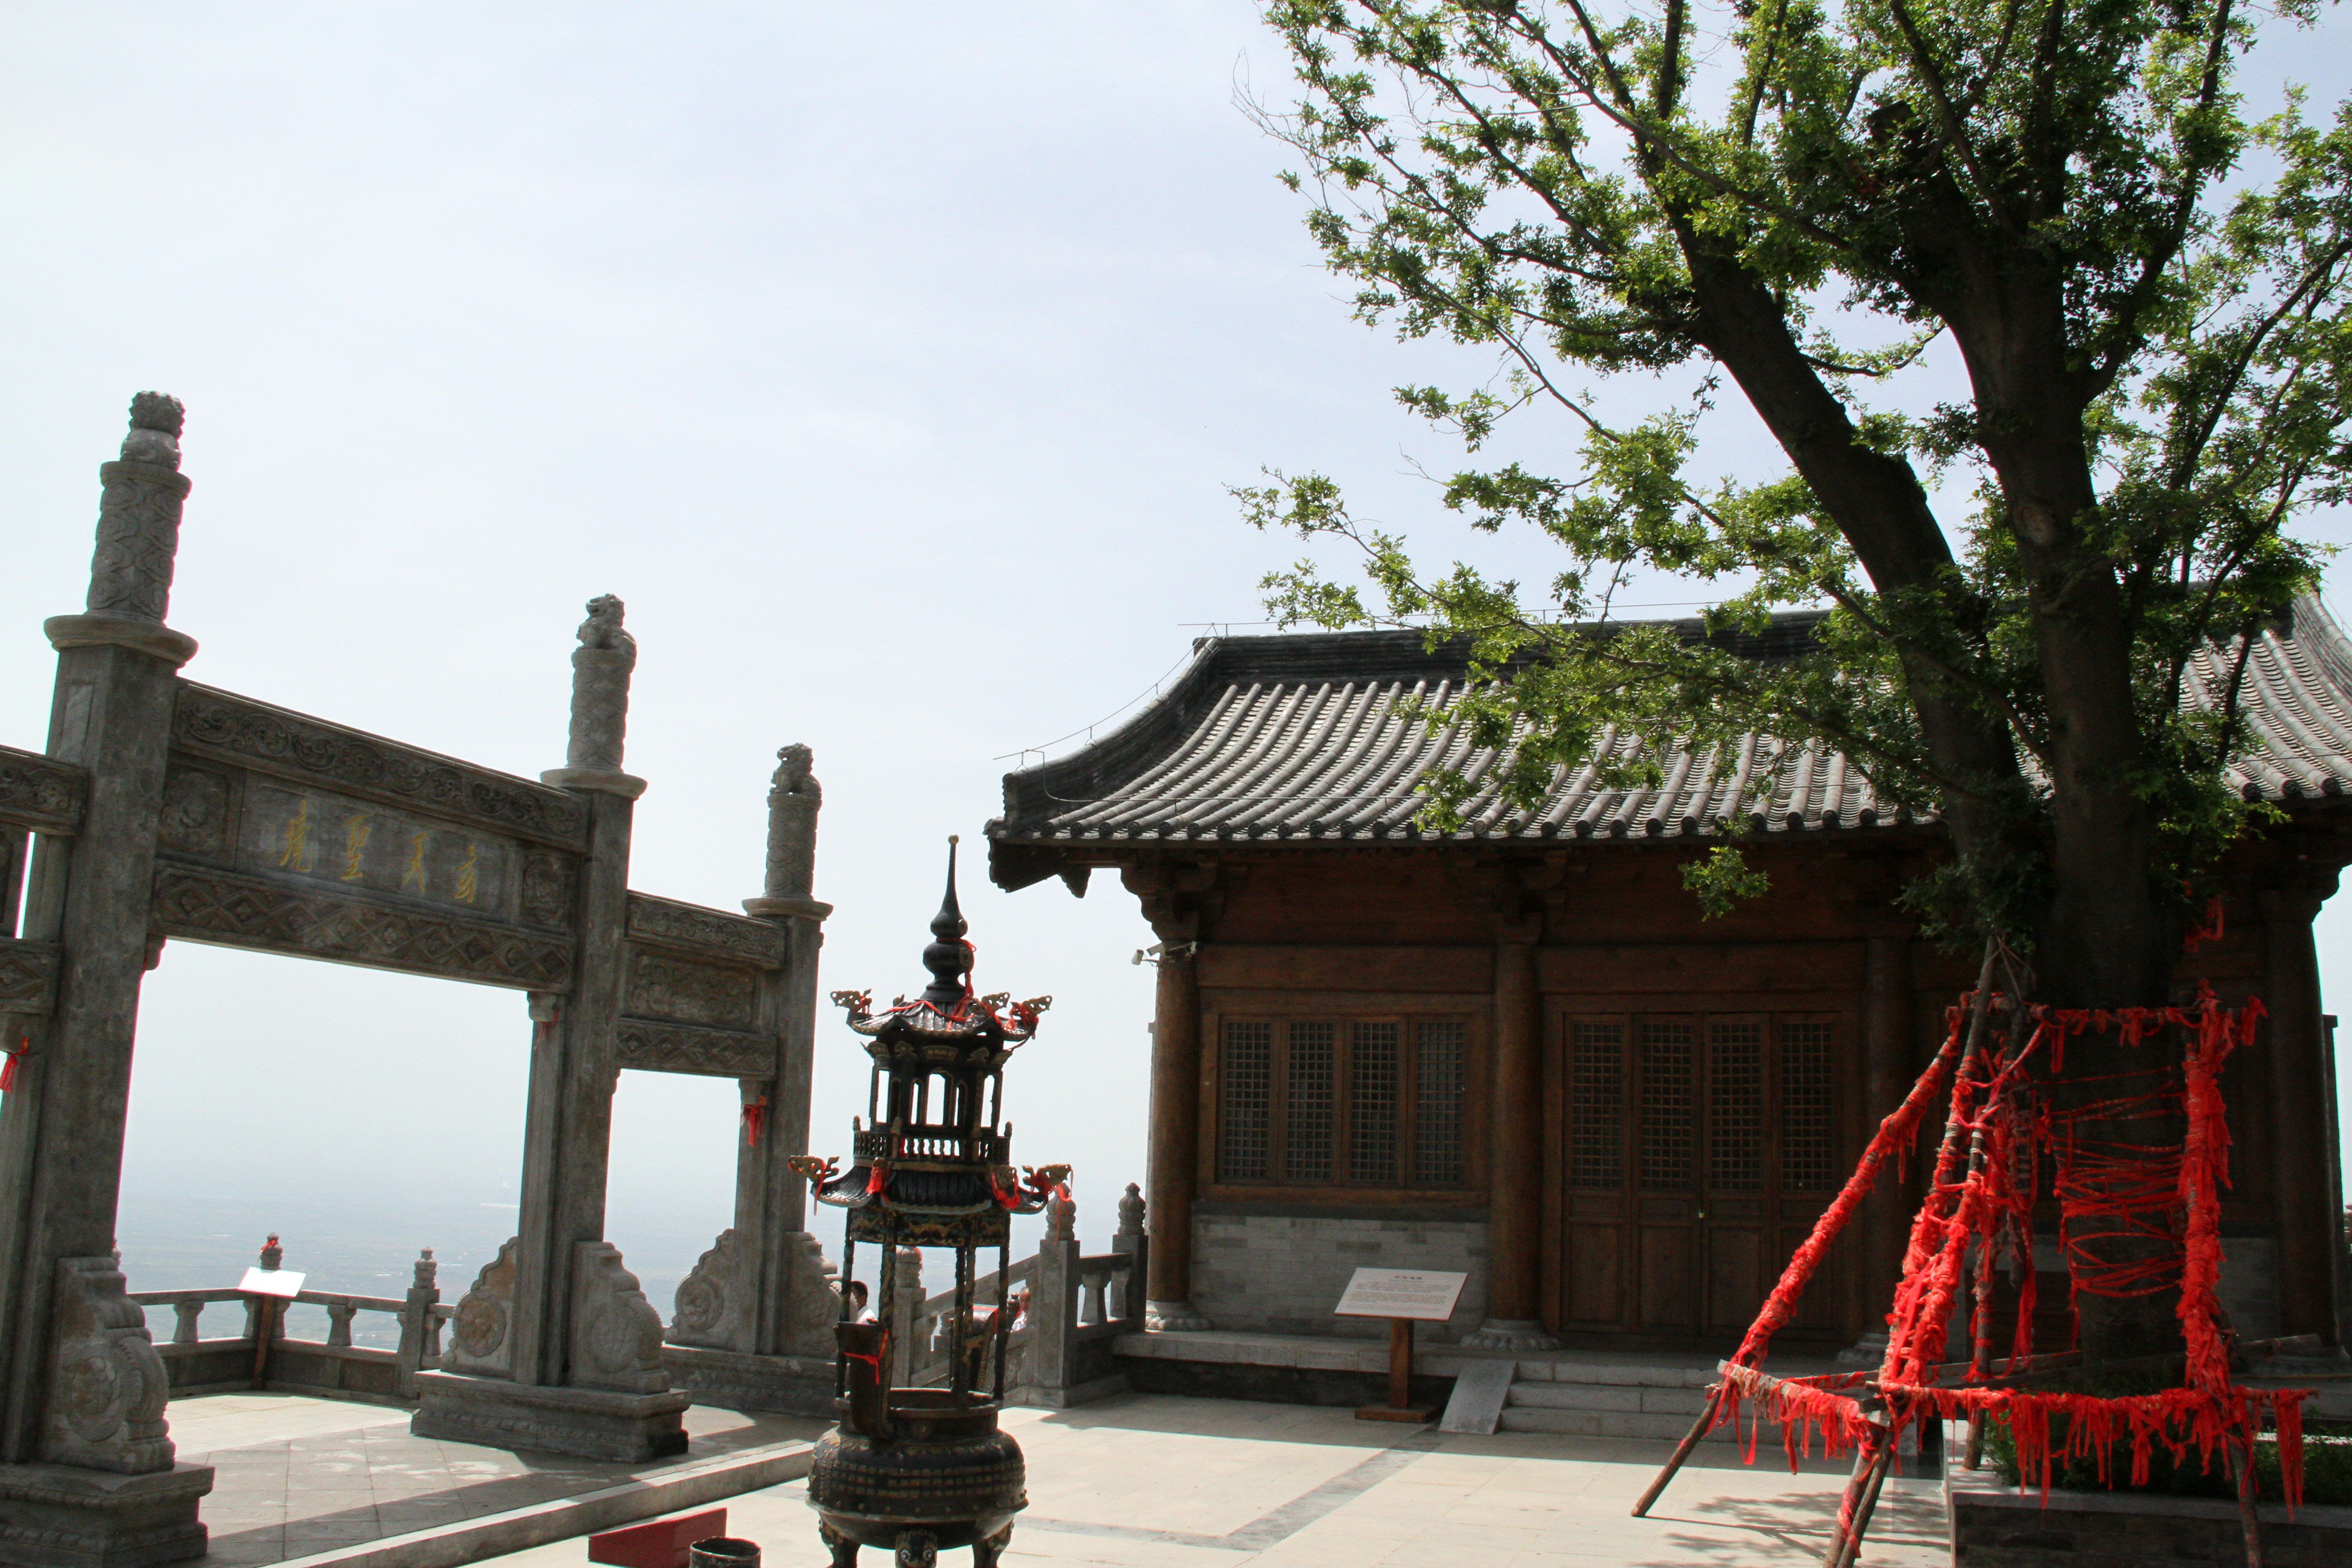 万安县西华山寺庙图片